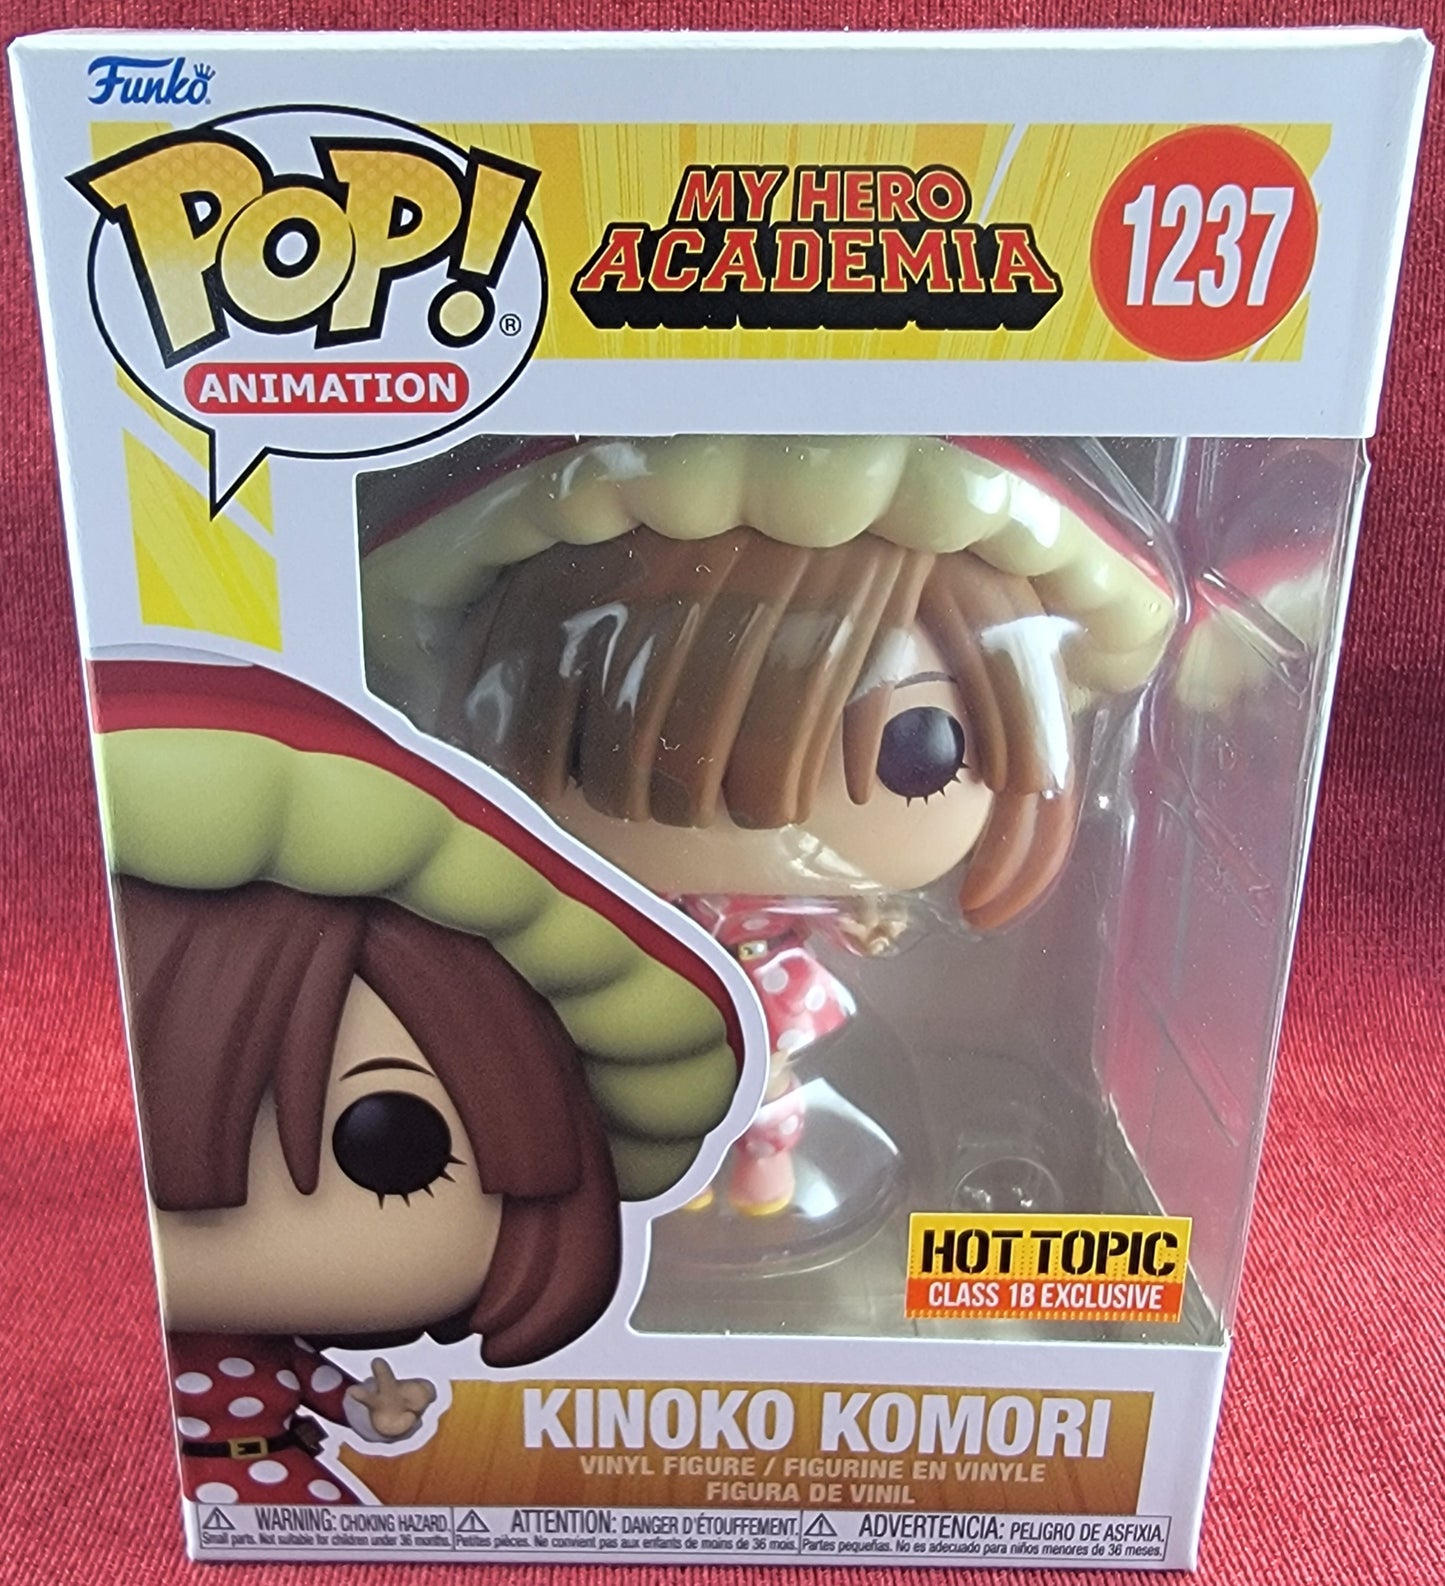 Kinoko Komori  hot topic exclusive funko # 1237 (nib)
With pop protector